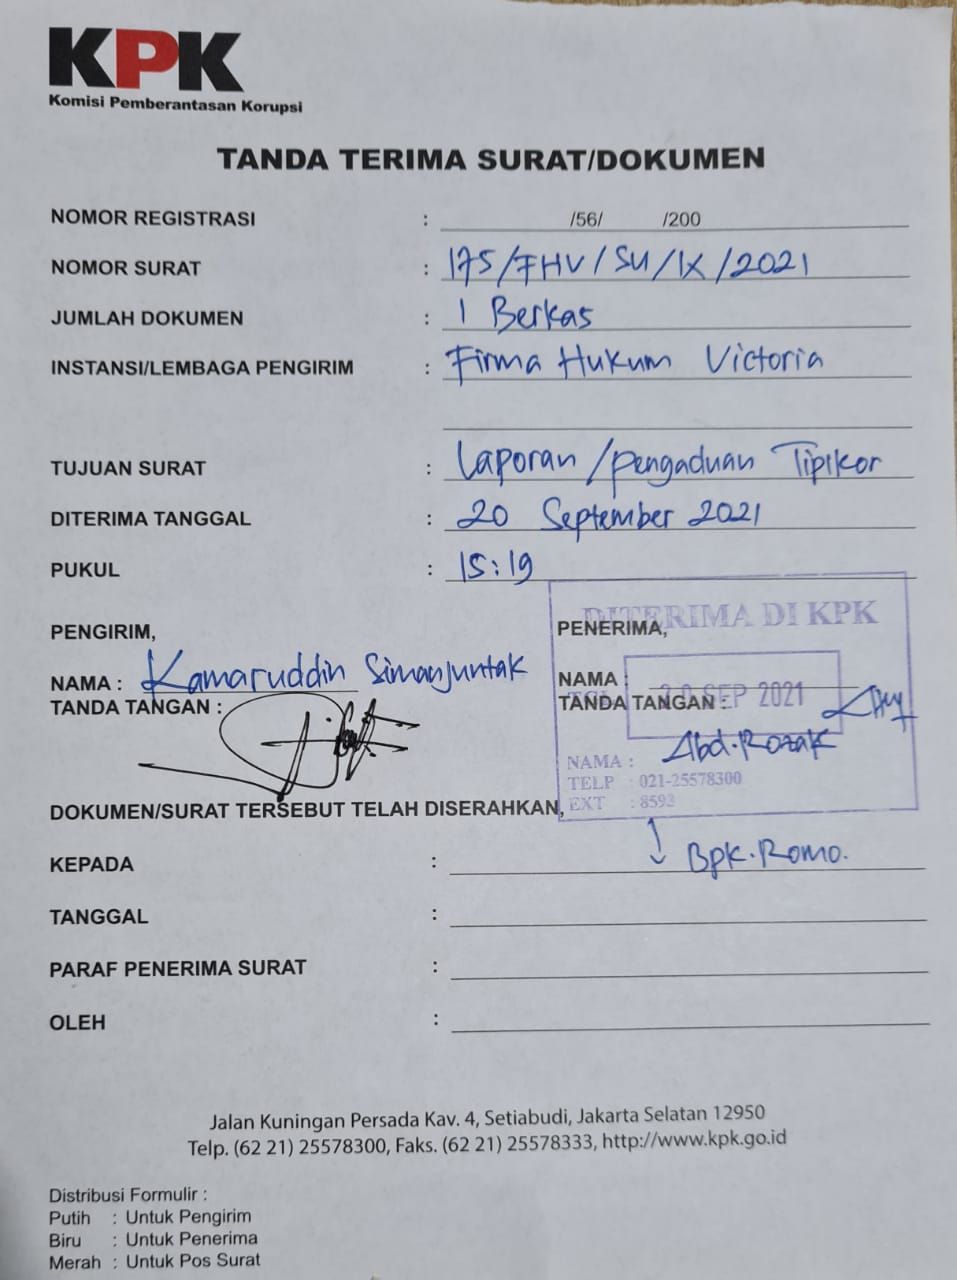 Dokumen yang ditunjukkan Kamaruddin Simanjuntak, yang tidak terima laporannya ke KPK dicap hoax. (Dok Kamaruddin Simanjuntak)